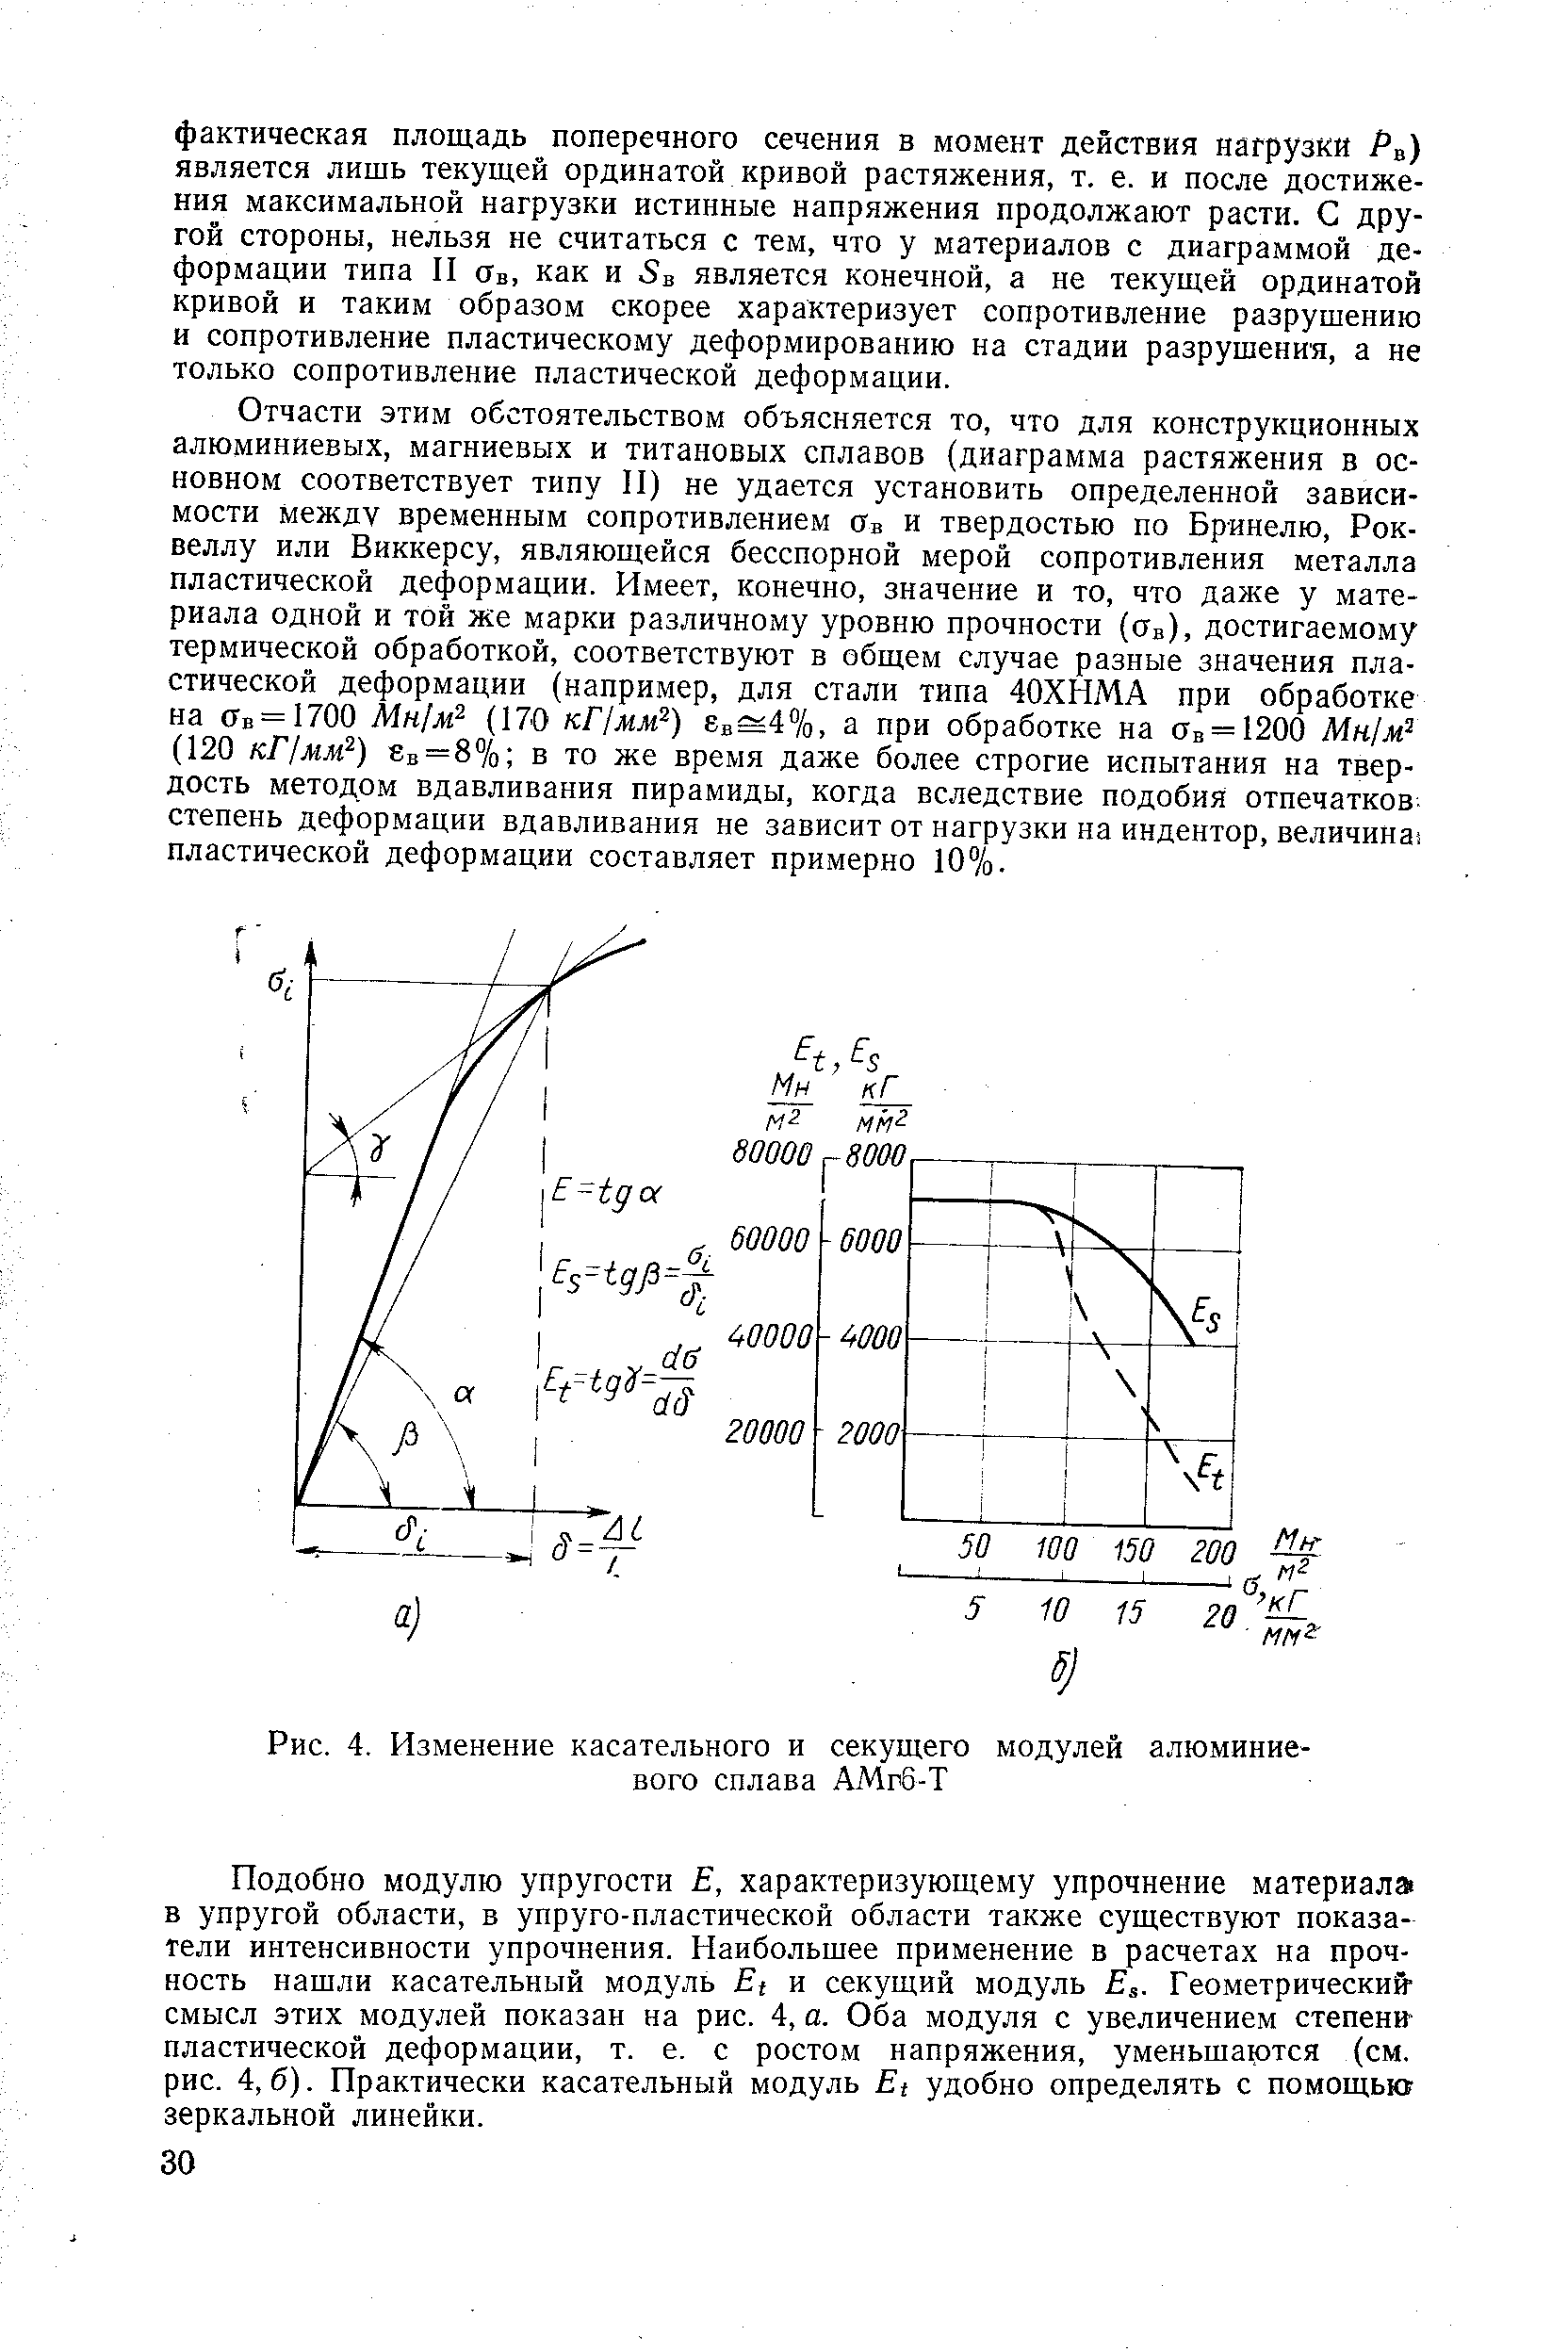 Рис. 4. Изменение касательного и секущего модулей алюминиевого сплава АМгб-Т
